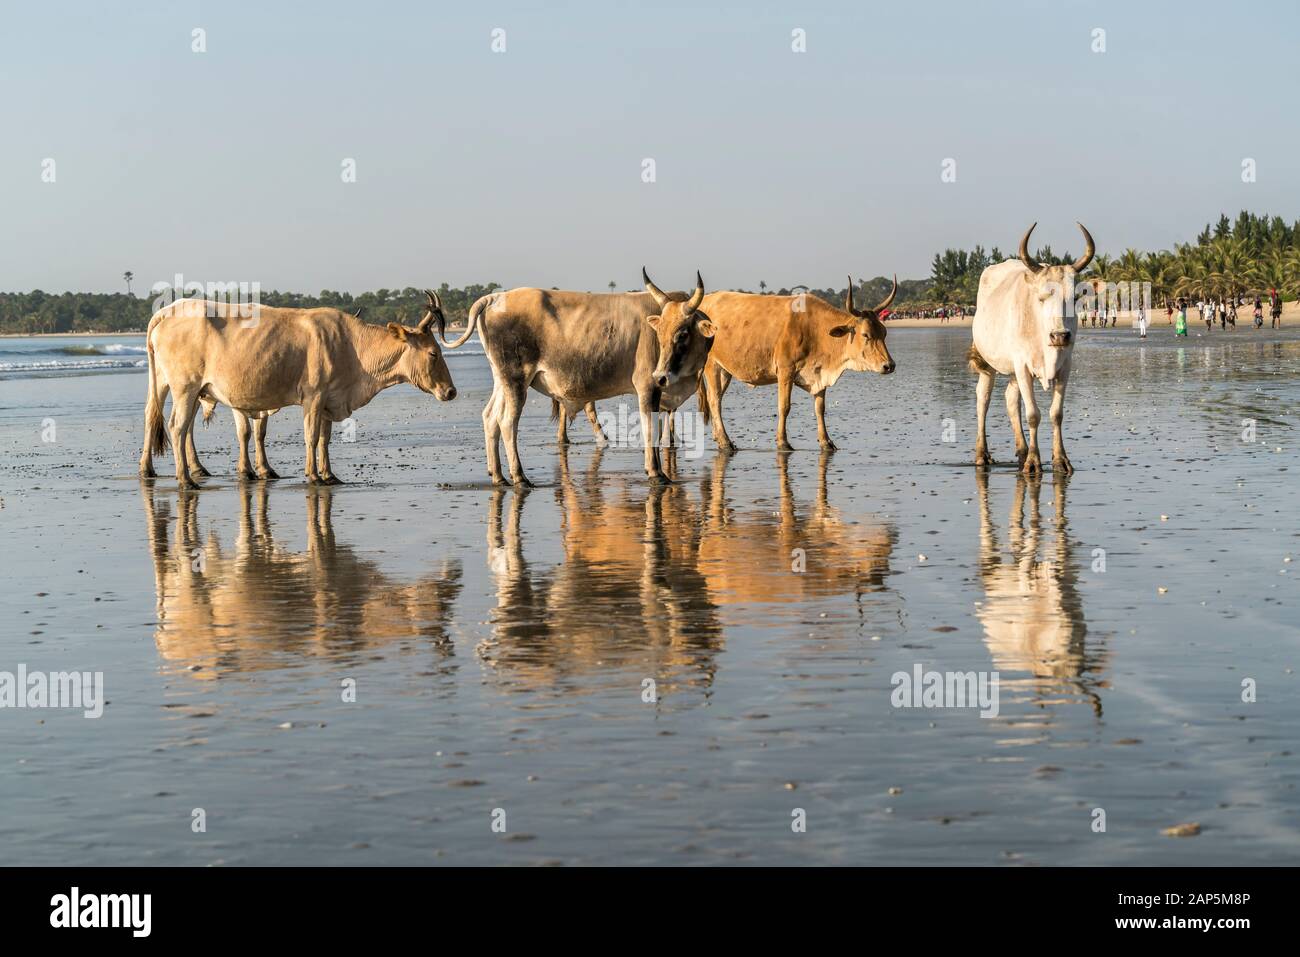 Afrikanische Rinder frei am Strand von Sanyang, Gambia, Westafrika | Afrikanische Vieh Roaming kostenlos am Strand in Sanyang, Gambia, Westafrika, Stockfoto